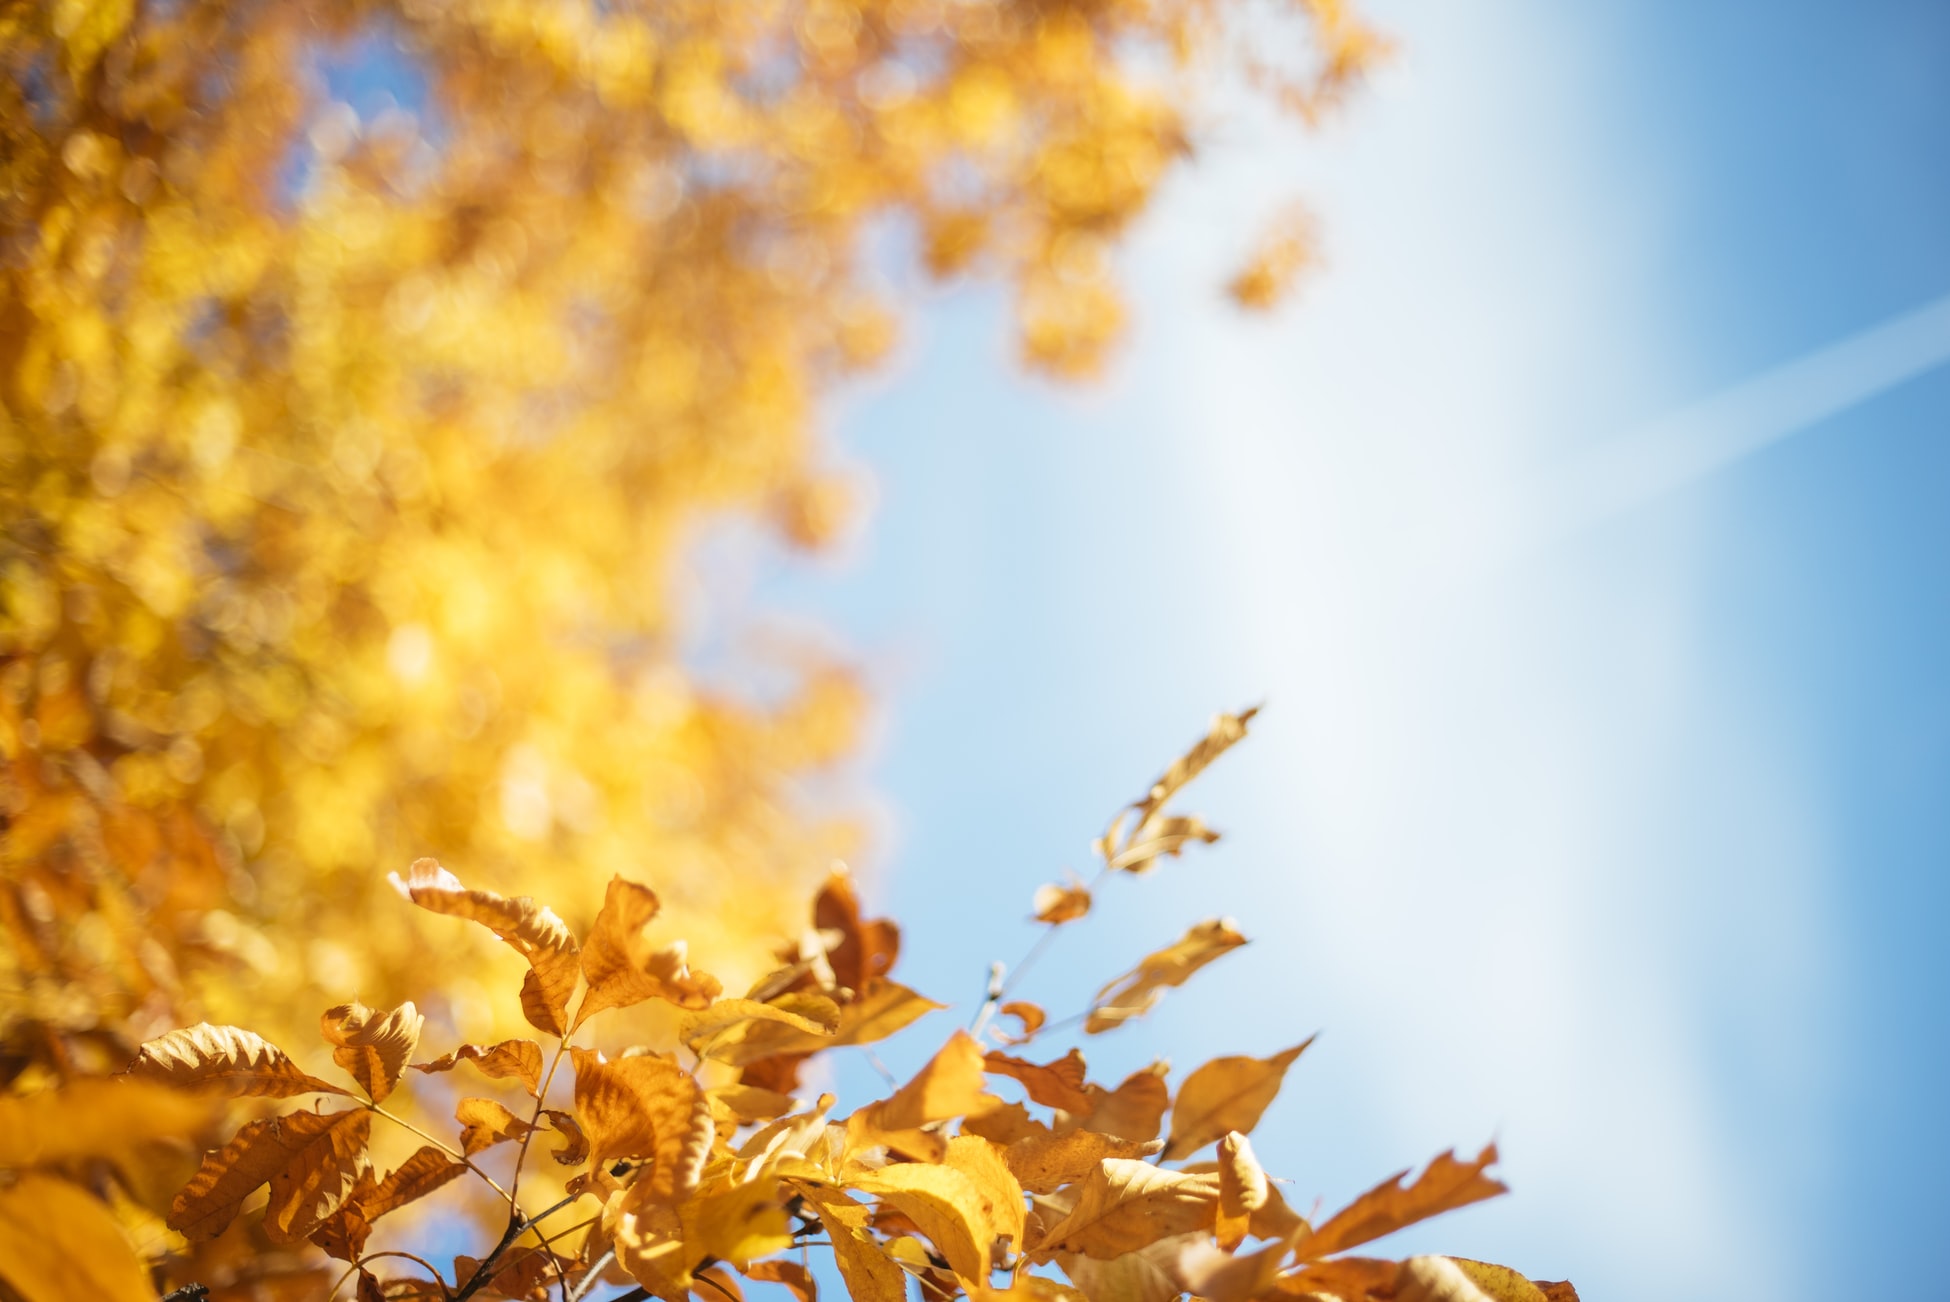 Hãy để cho bức ảnh hình nền mùa thu này đưa bạn vào một thế giới đầy màu sắc và tuyệt đẹp. Với những tông màu trầm ấm và những chiếc lá vàng rơi rụng, bạn sẽ không thể nhịn được sự hoài niệm về mùa thu nữa. Hãy ngắm nhìn và đắm chìm.